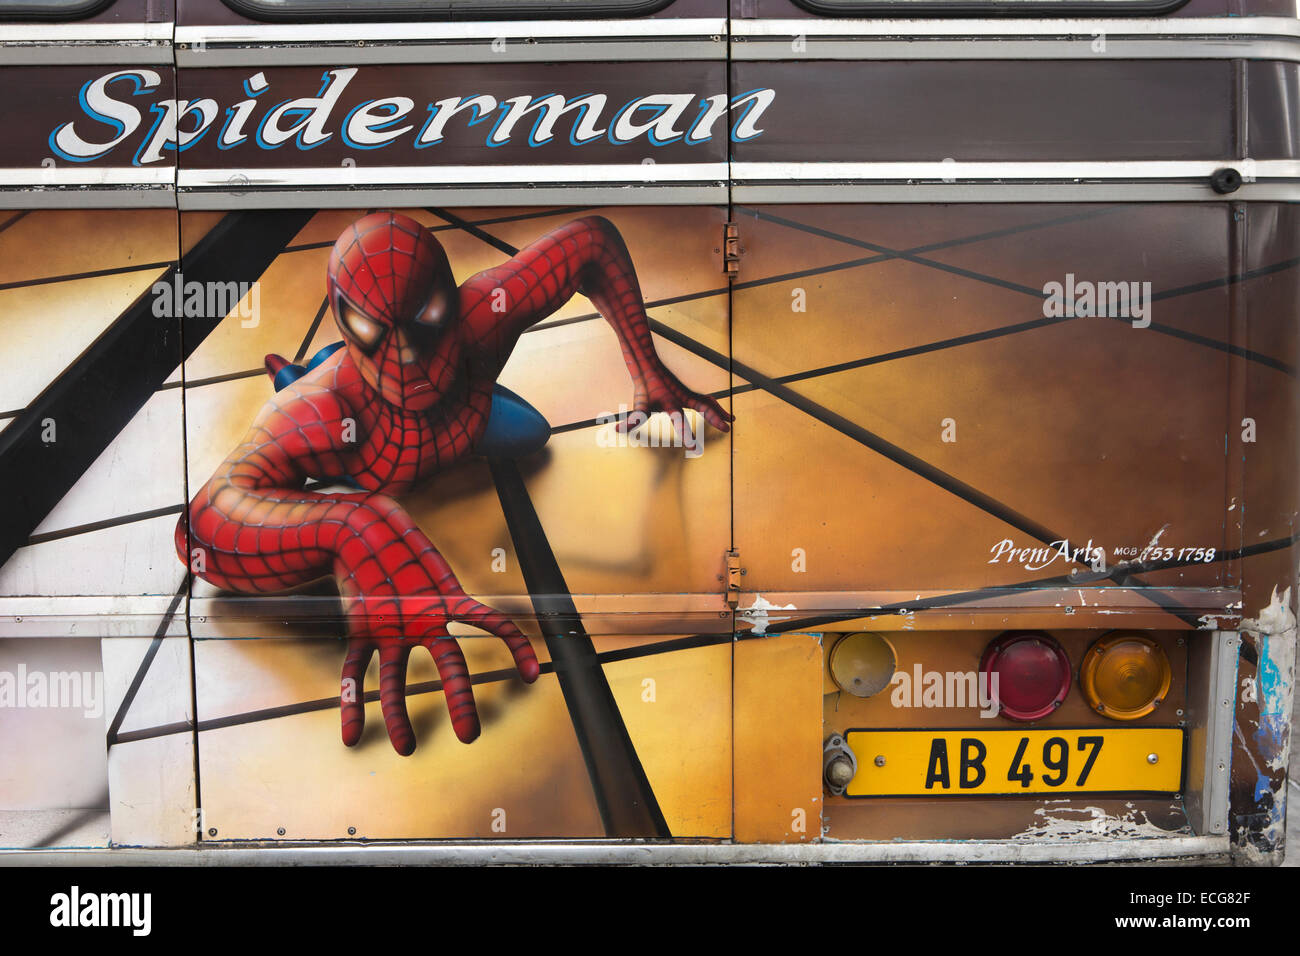 Mauricio, Mahebourg, Spiderman aerógrafo diseño pintado en la espalda de bus local. Foto de stock